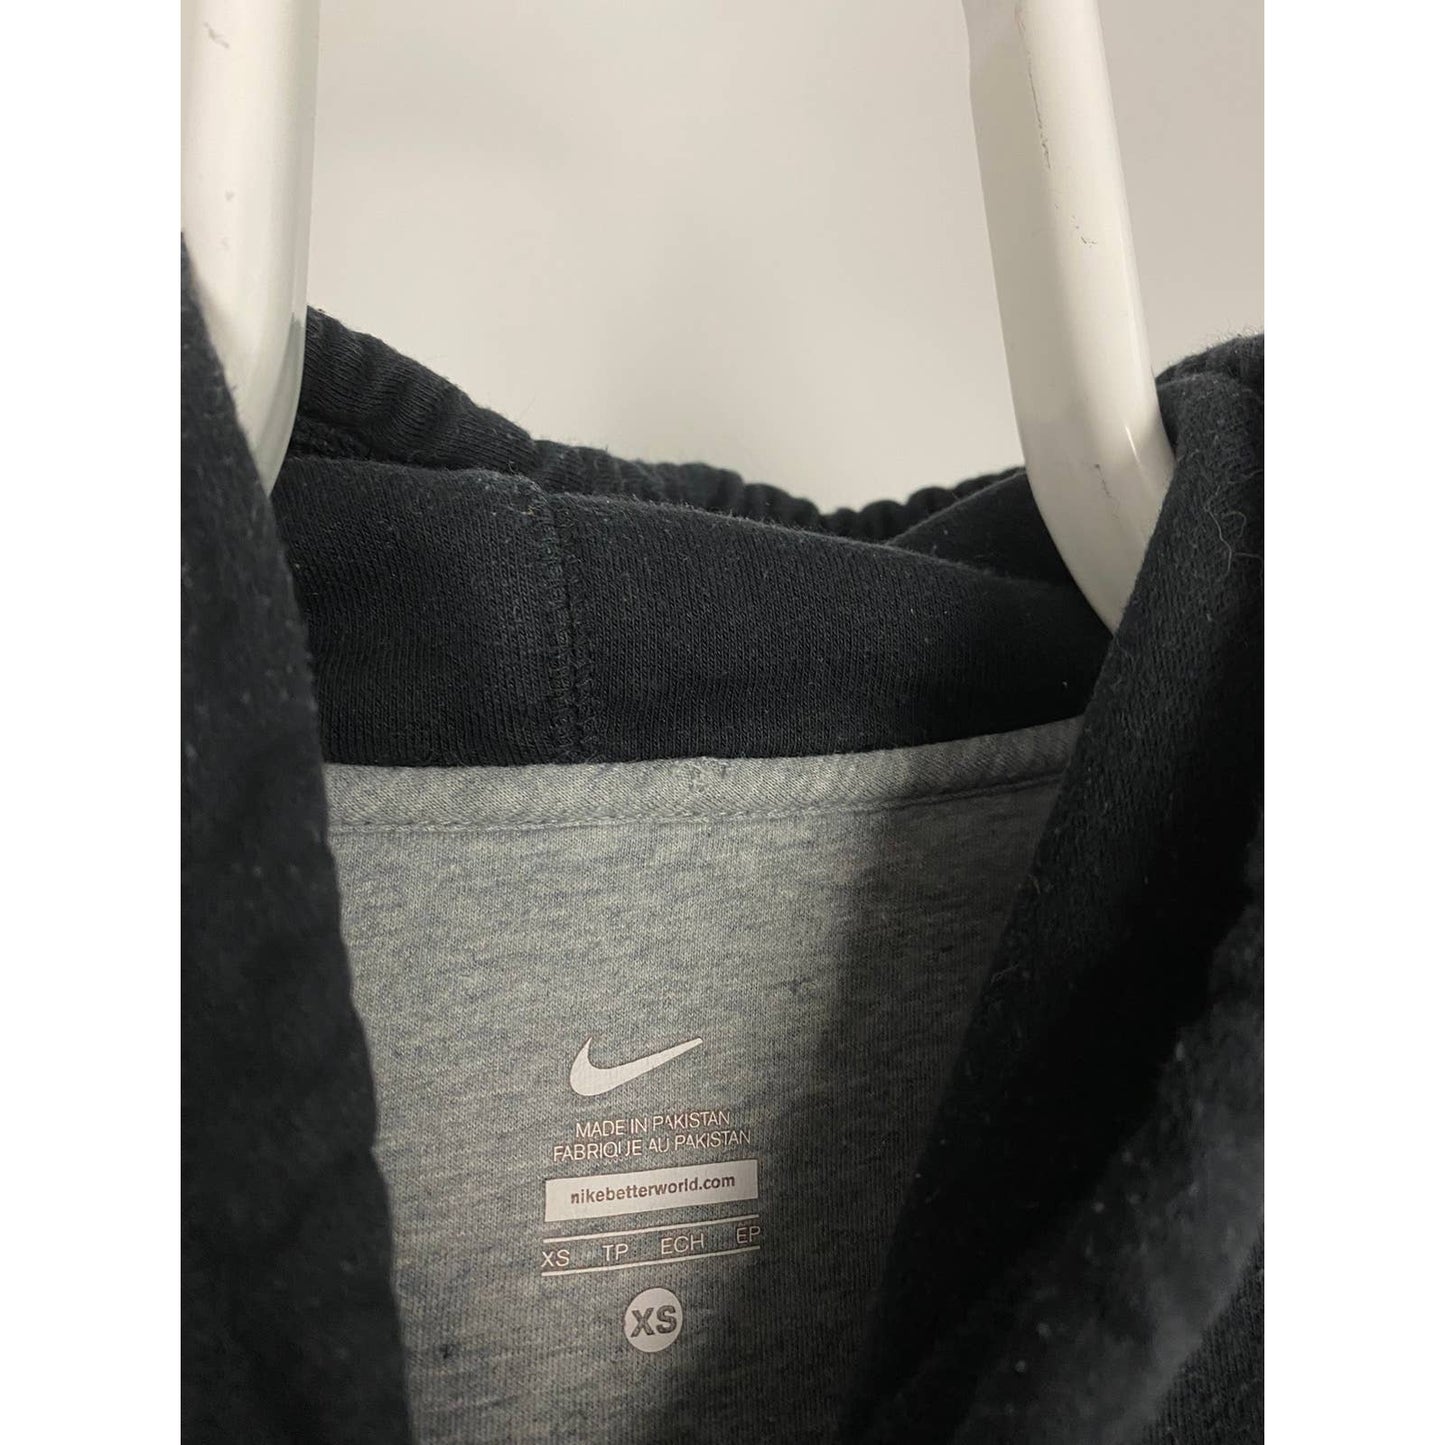 Nike spell out center swoosh hoodie black sweatshirt vintage